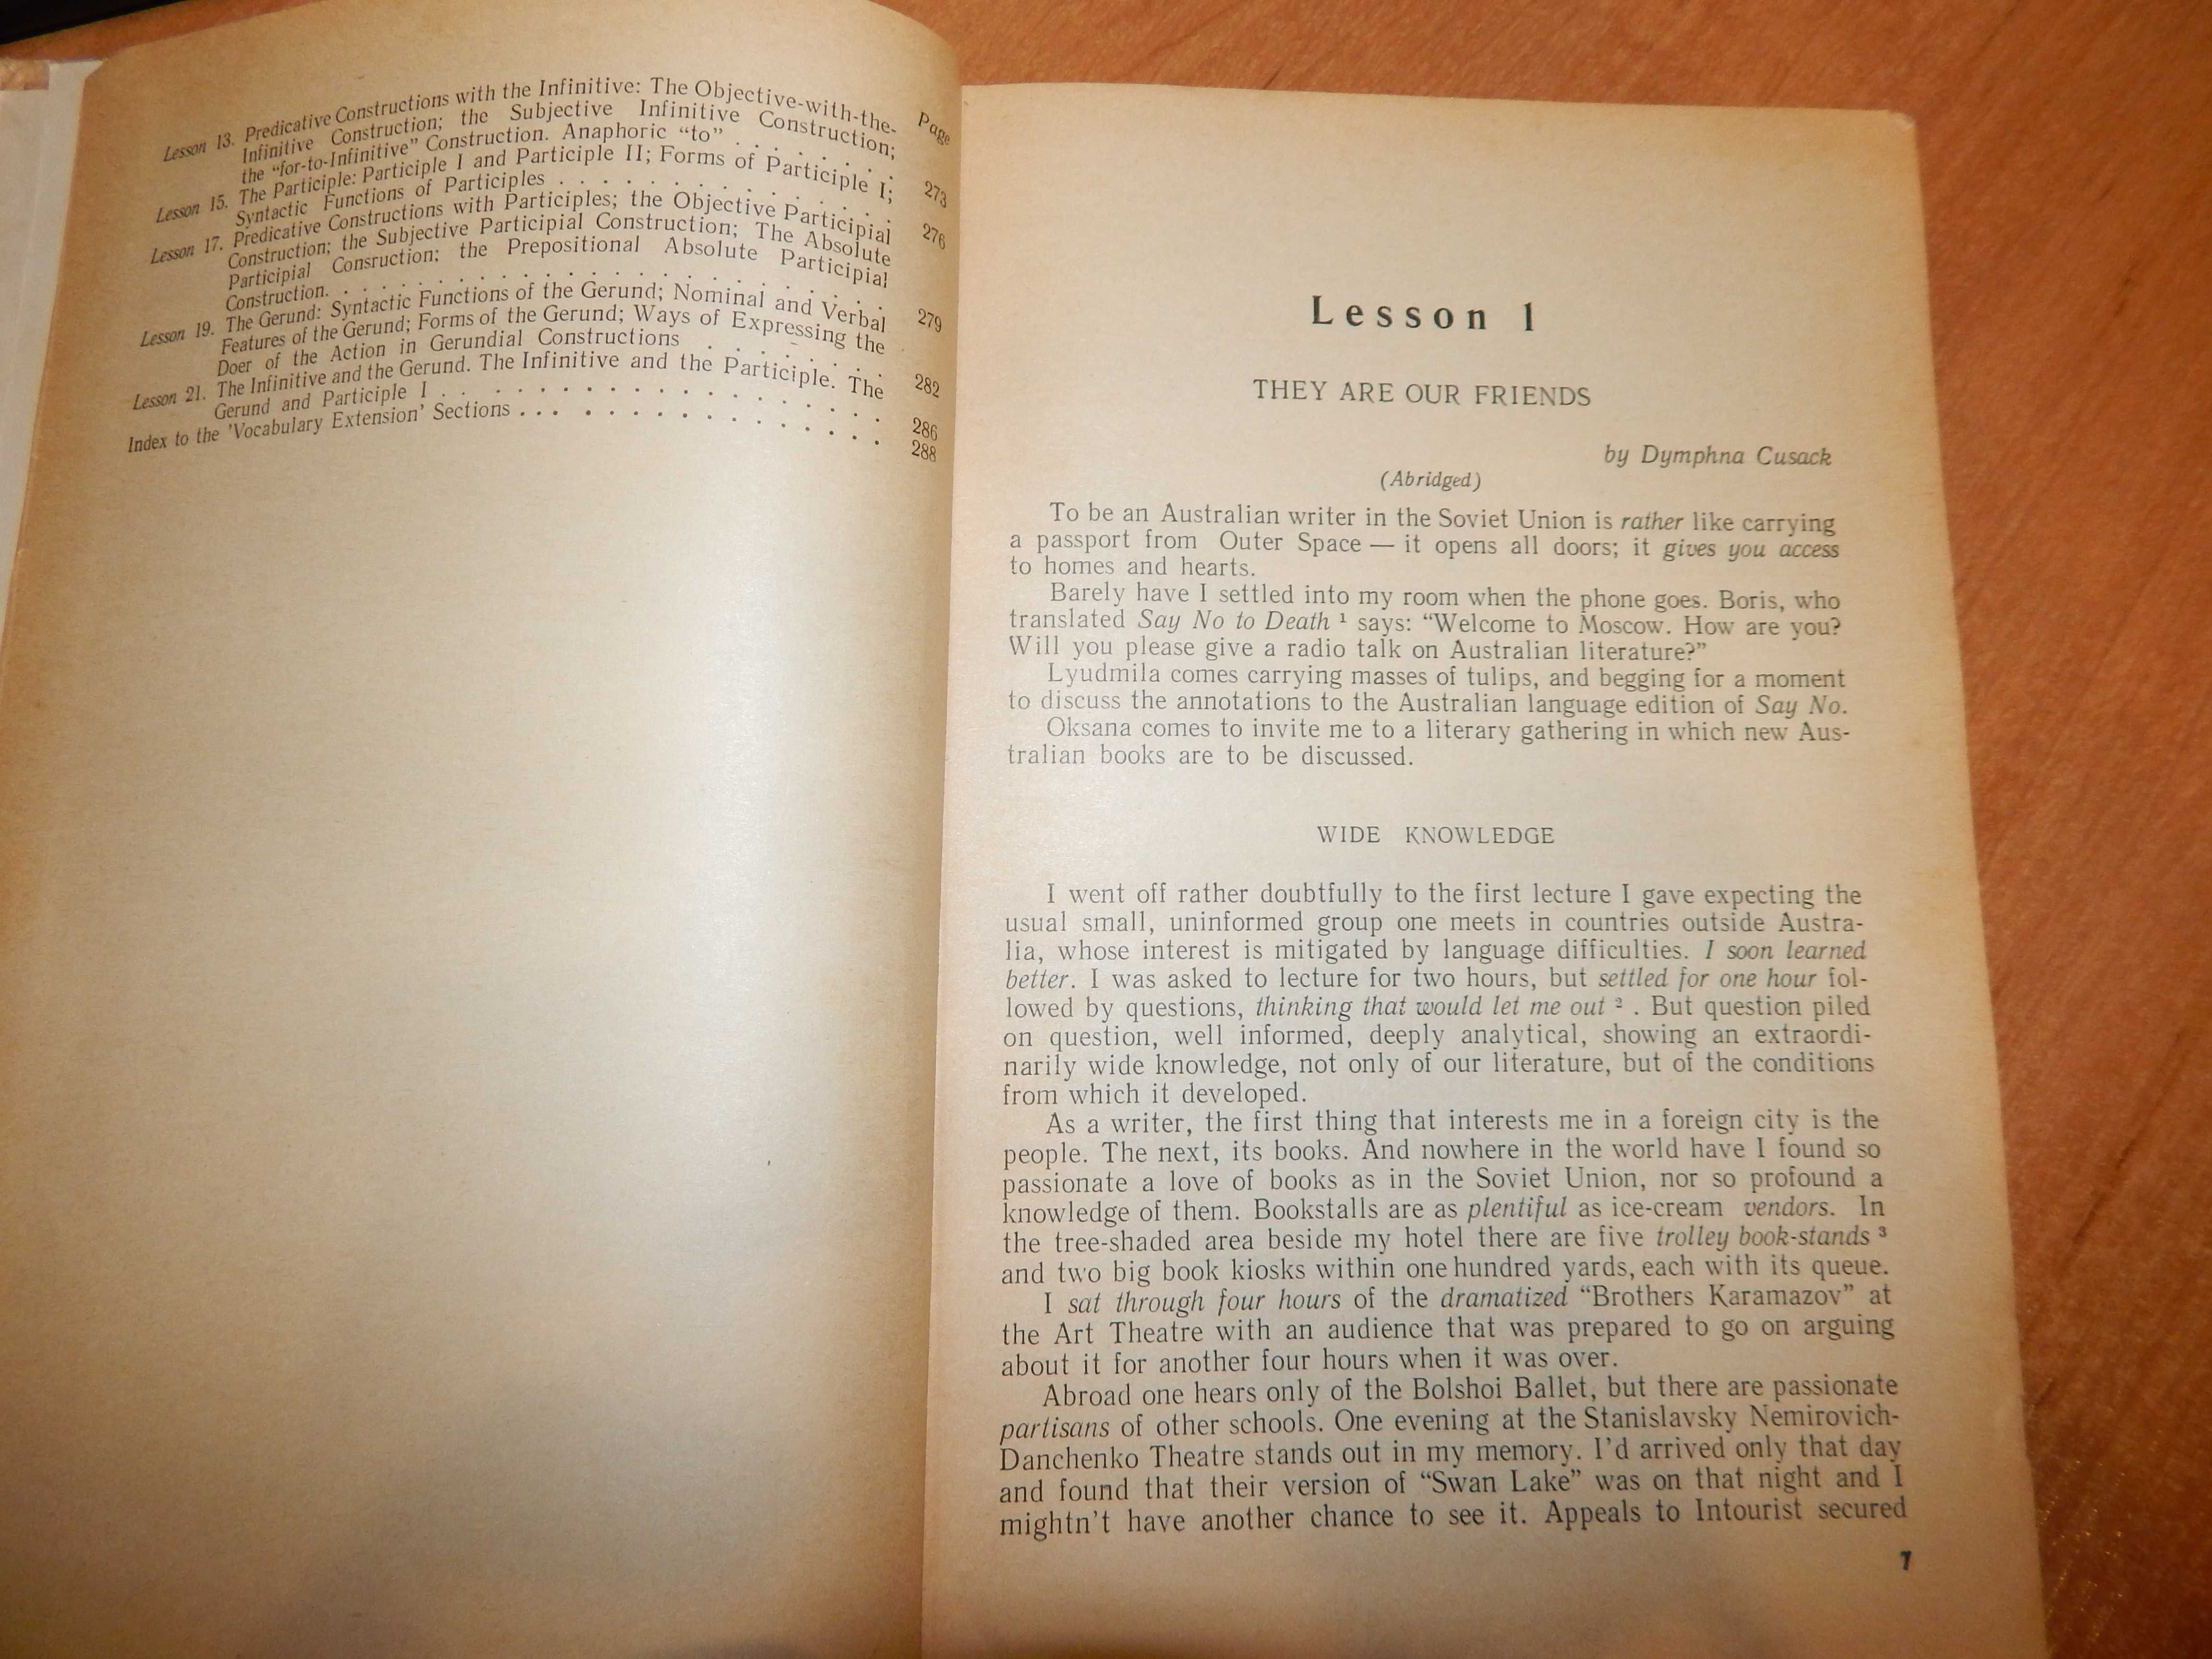 Учебник Англ яз для 2 курса института Москва 1974